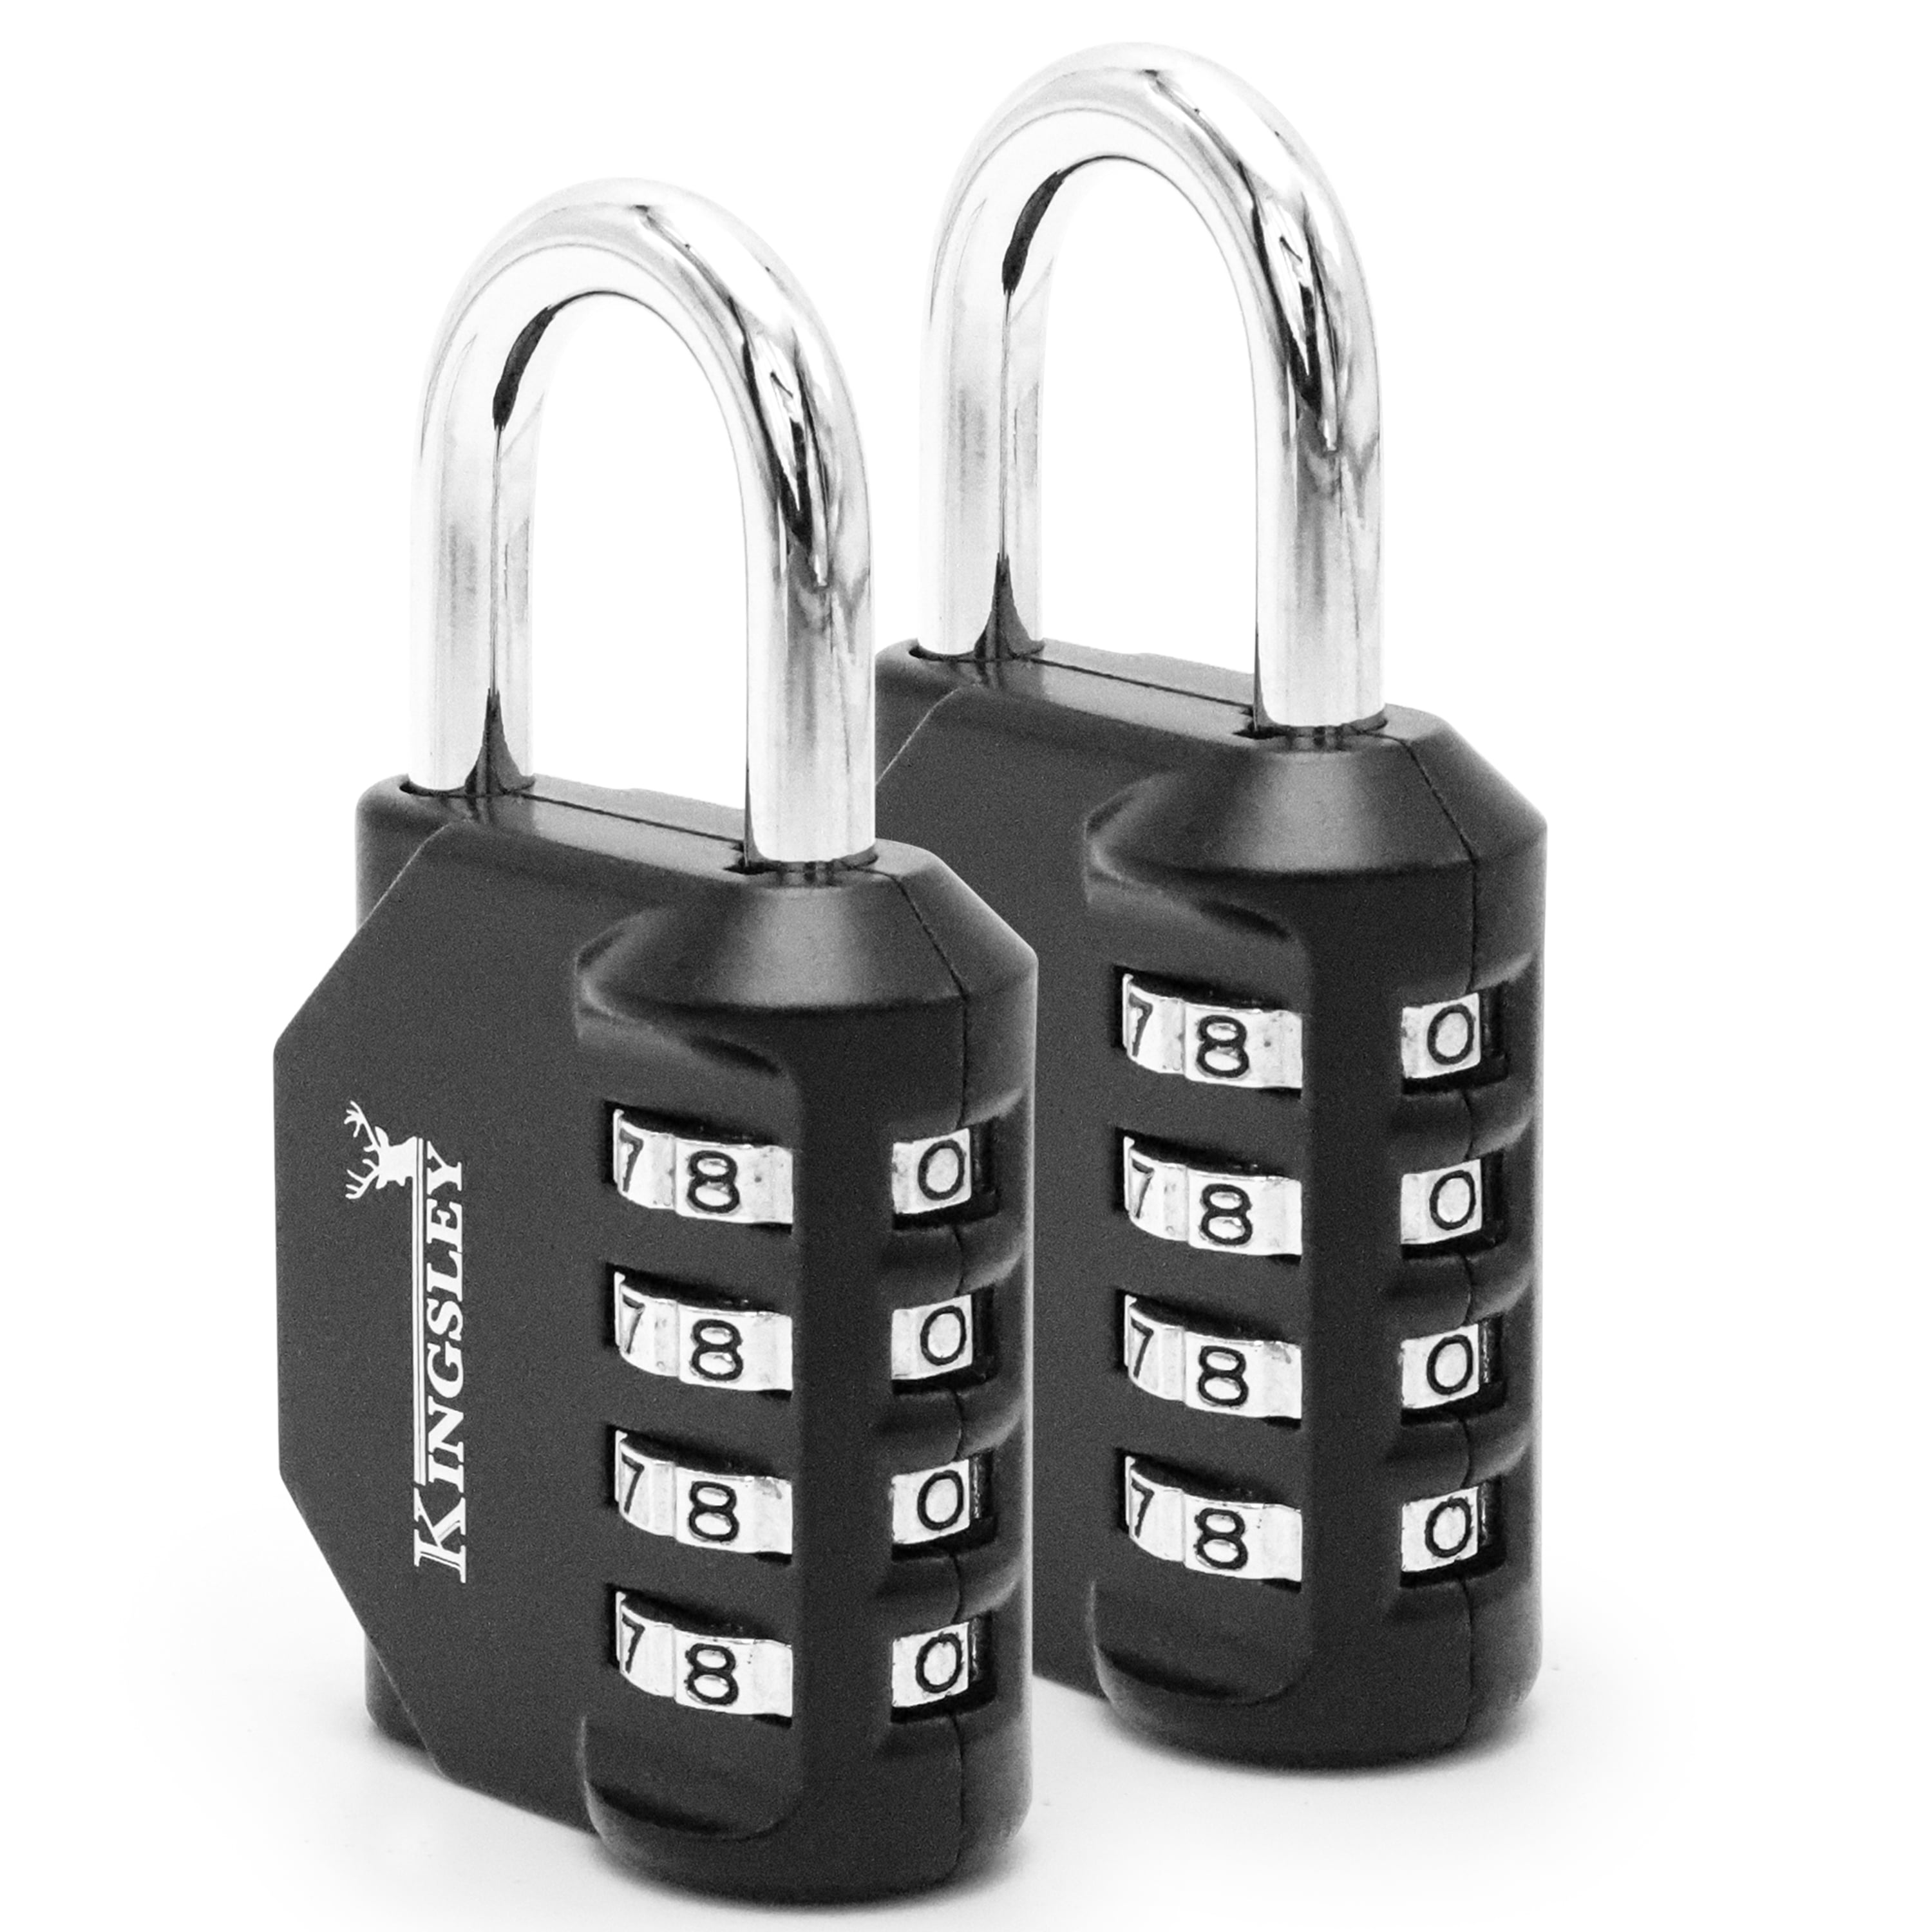 Buy Wholesale China Wholesale Combination Locks Combination Padlock Heavy  Duty Code Padlocks 04c Combination Lock For Gym Locker Drawer & Combination  Locks at USD 0.75